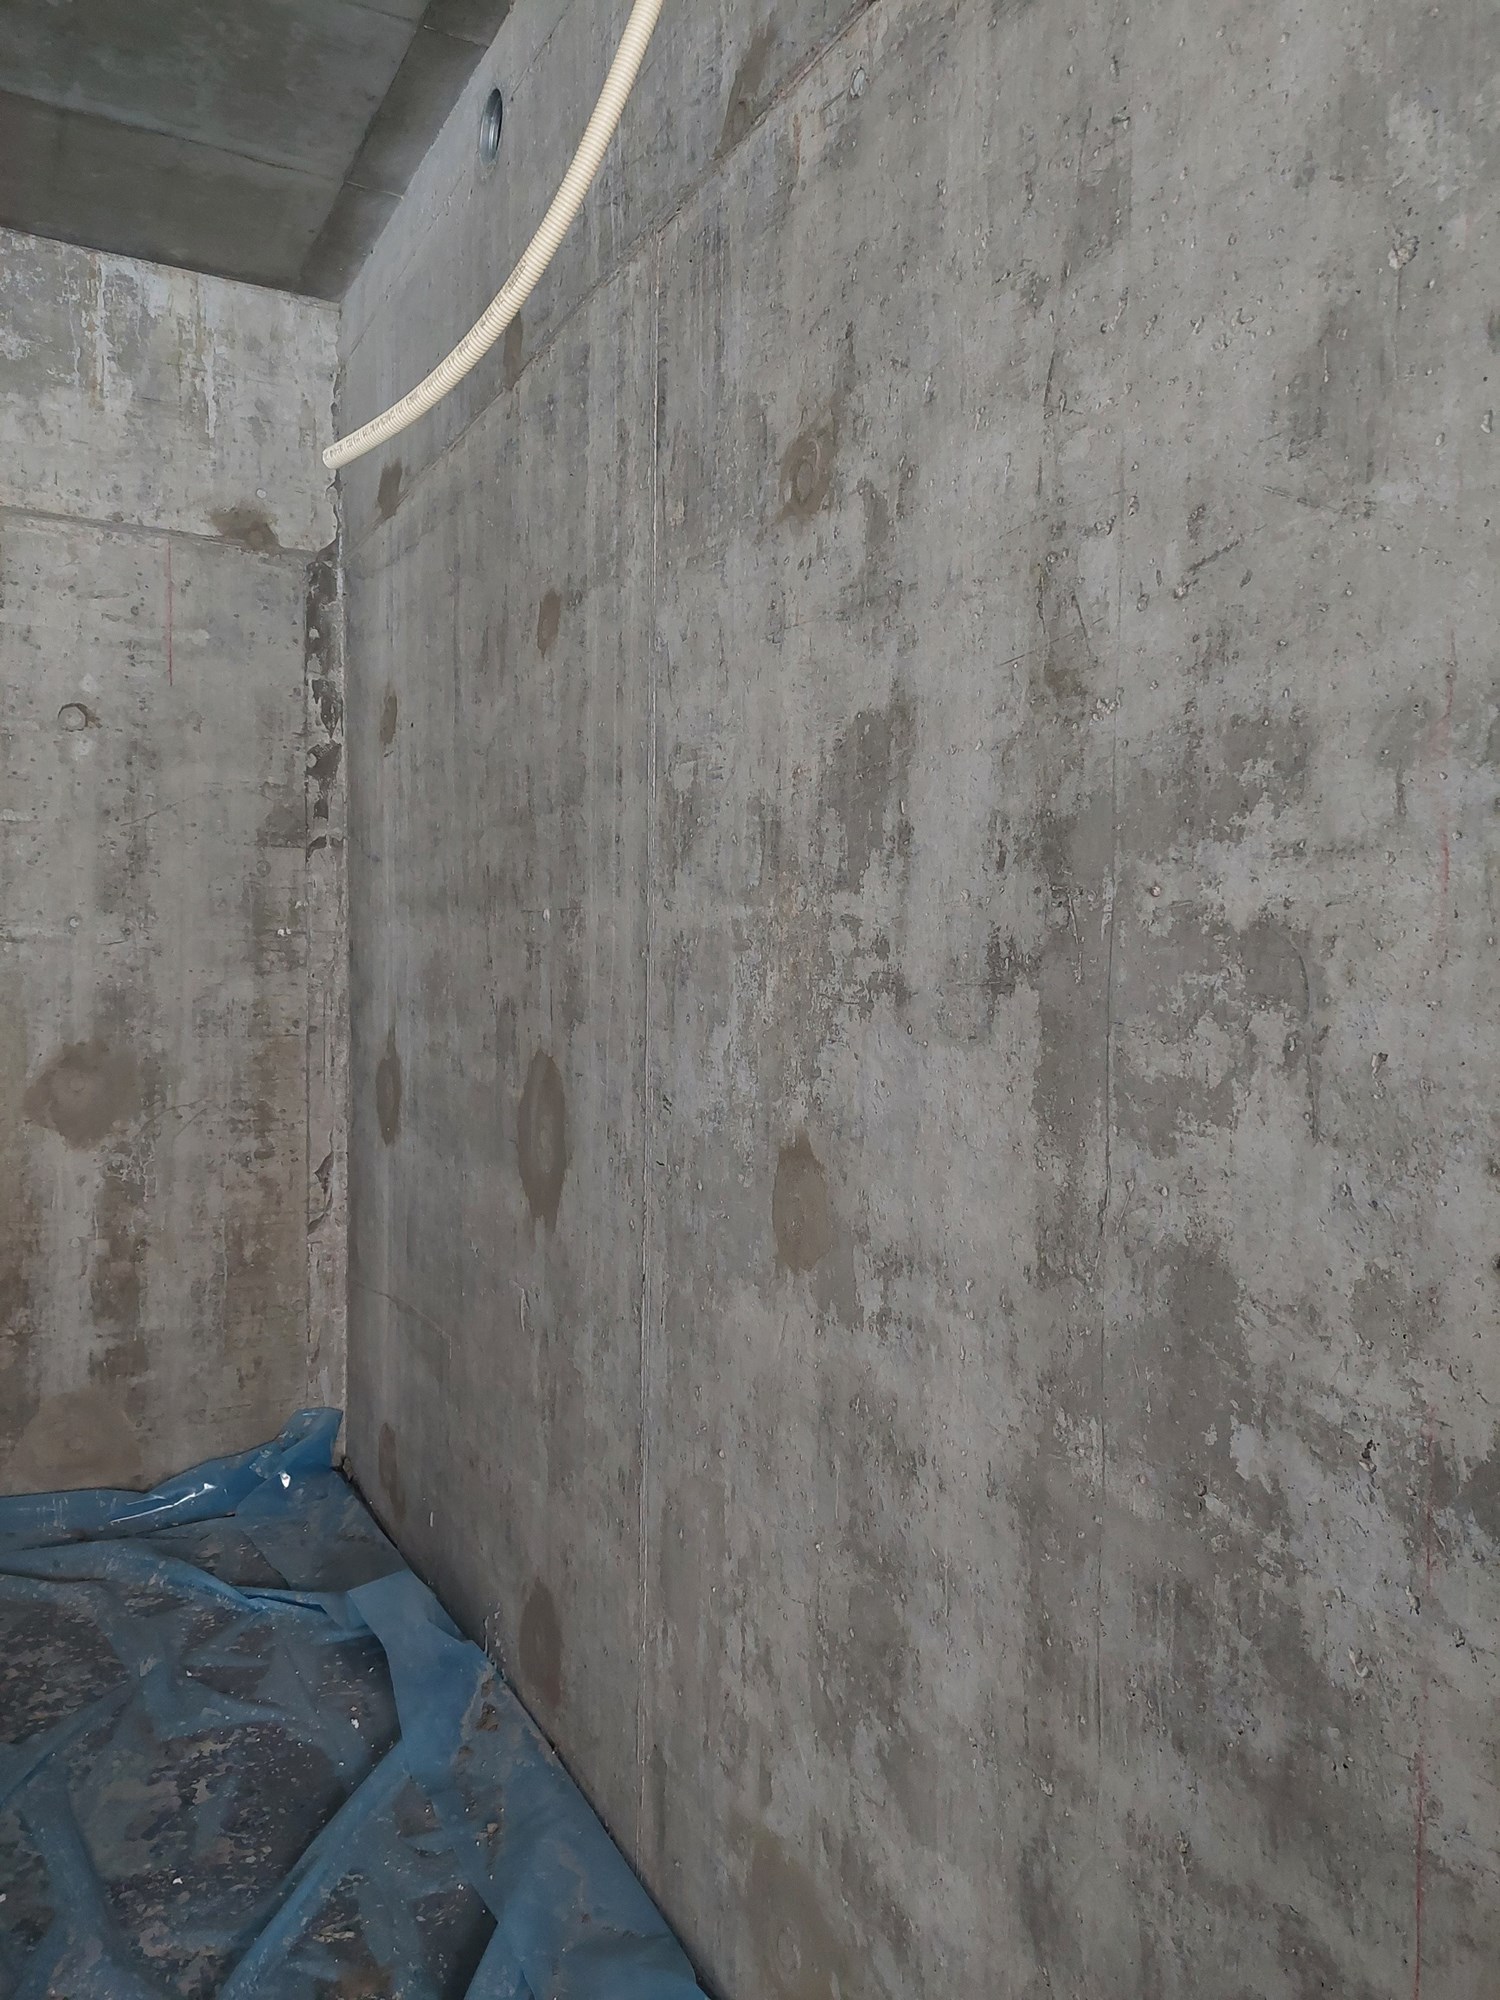 Isolert hobbygarasje i plasstøpt betong, male ny betong innvendig - 20211128_142223.jpg - eehgil